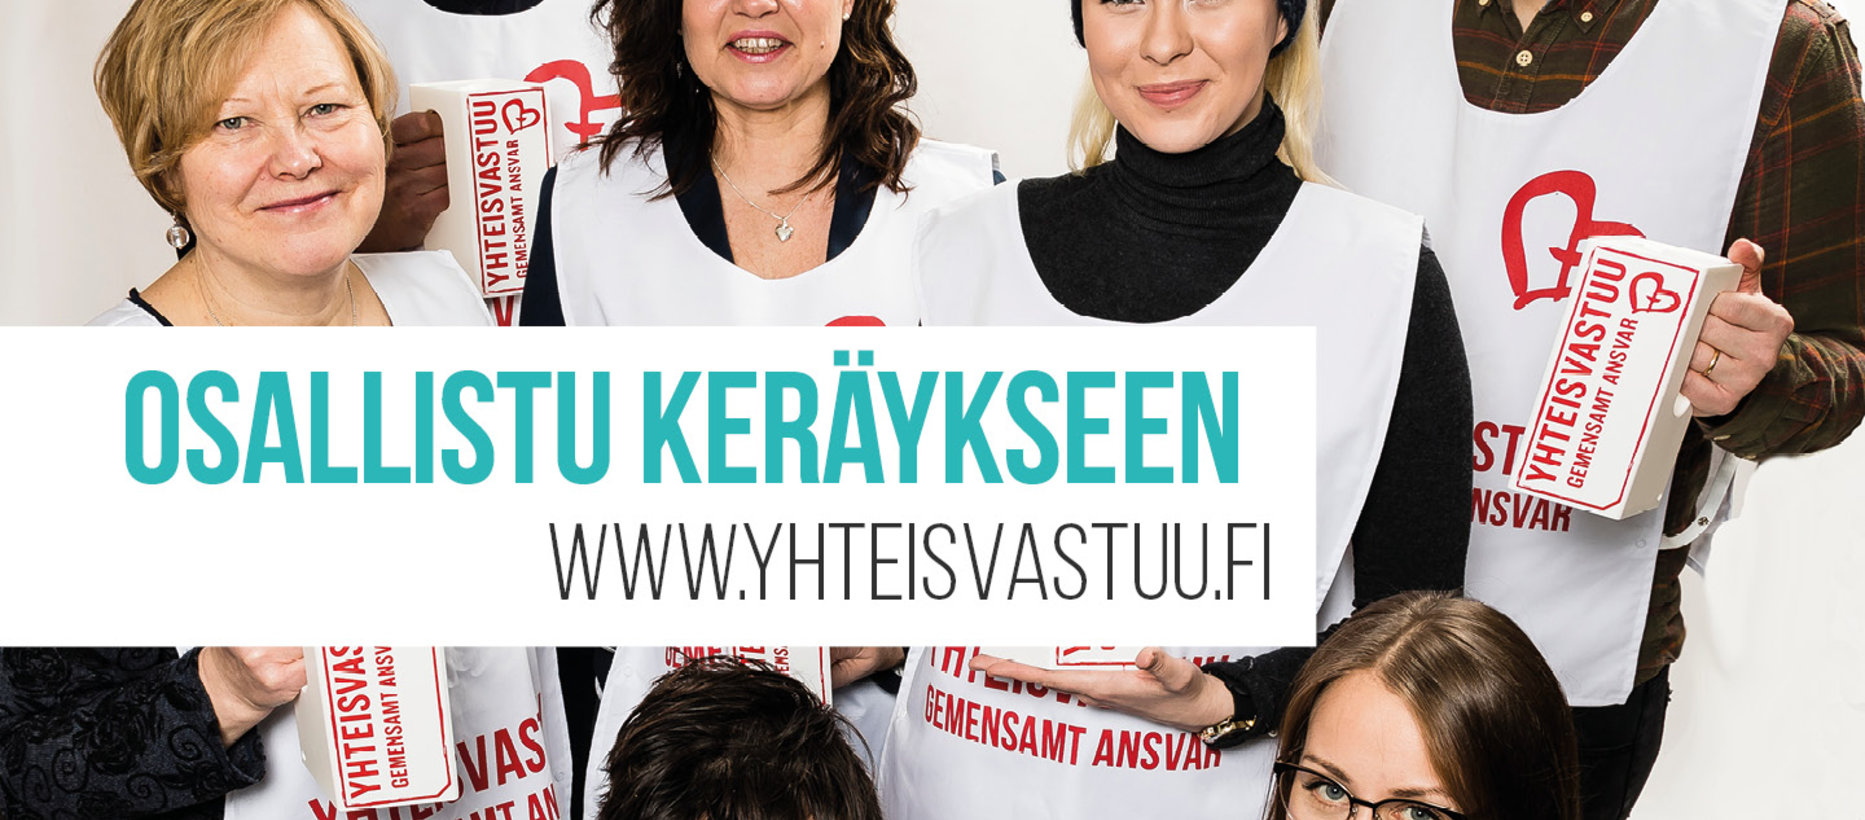 Yhteisvastuukerääjiä keräysliivit päällä. Teksti kuvassa: Osallistu keräykseen. www.yhteisvastuu.fi